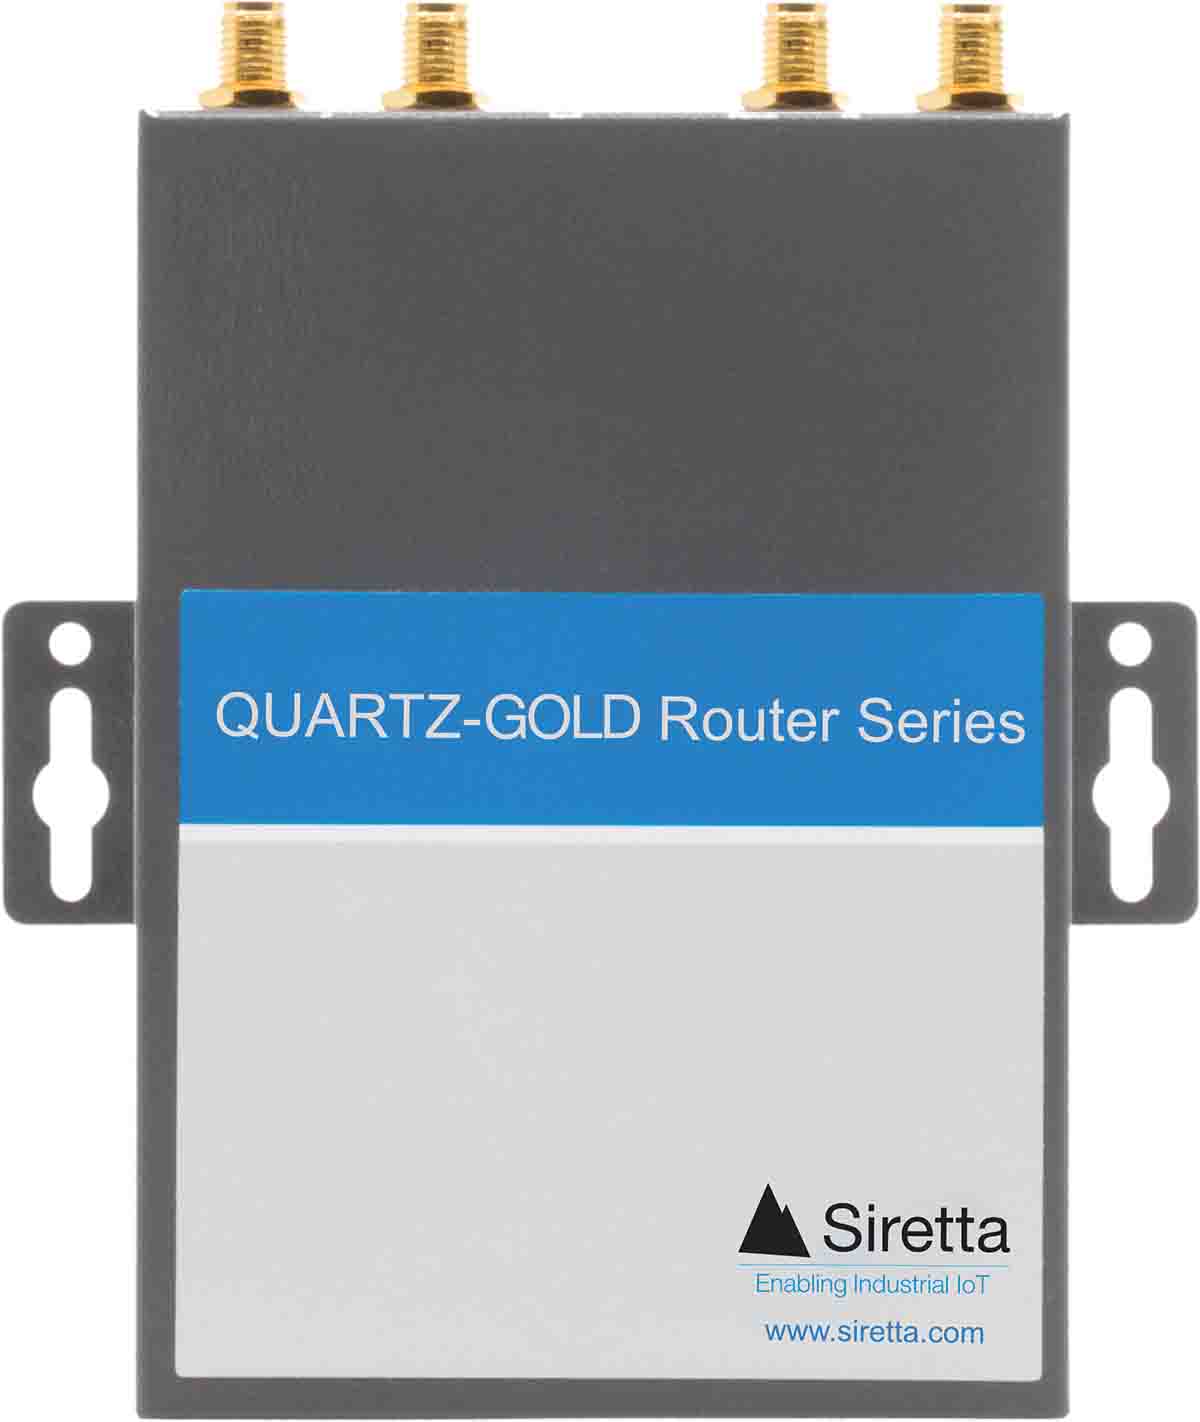 Siretta QUARTZ-GOLD-W21-LTE4 (EU) 4G, Ethernet, 1 x WAN/1 x LAN, 2 x LAN Ports